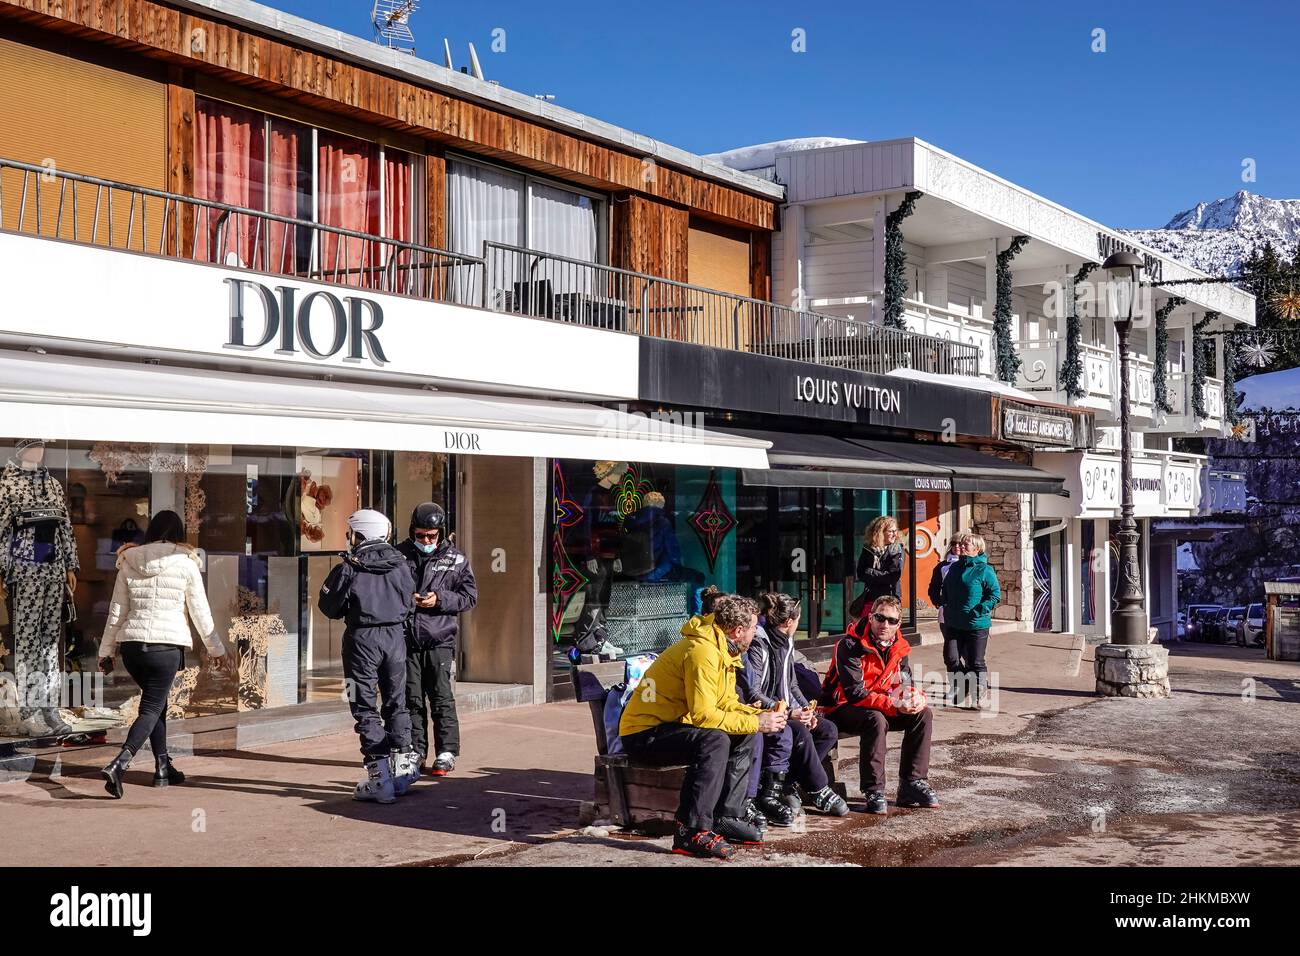 Einkaufsmeile, Dior, Louis Vuitton, Courchevel, Departement Savoie, Frankreich Stock Photo